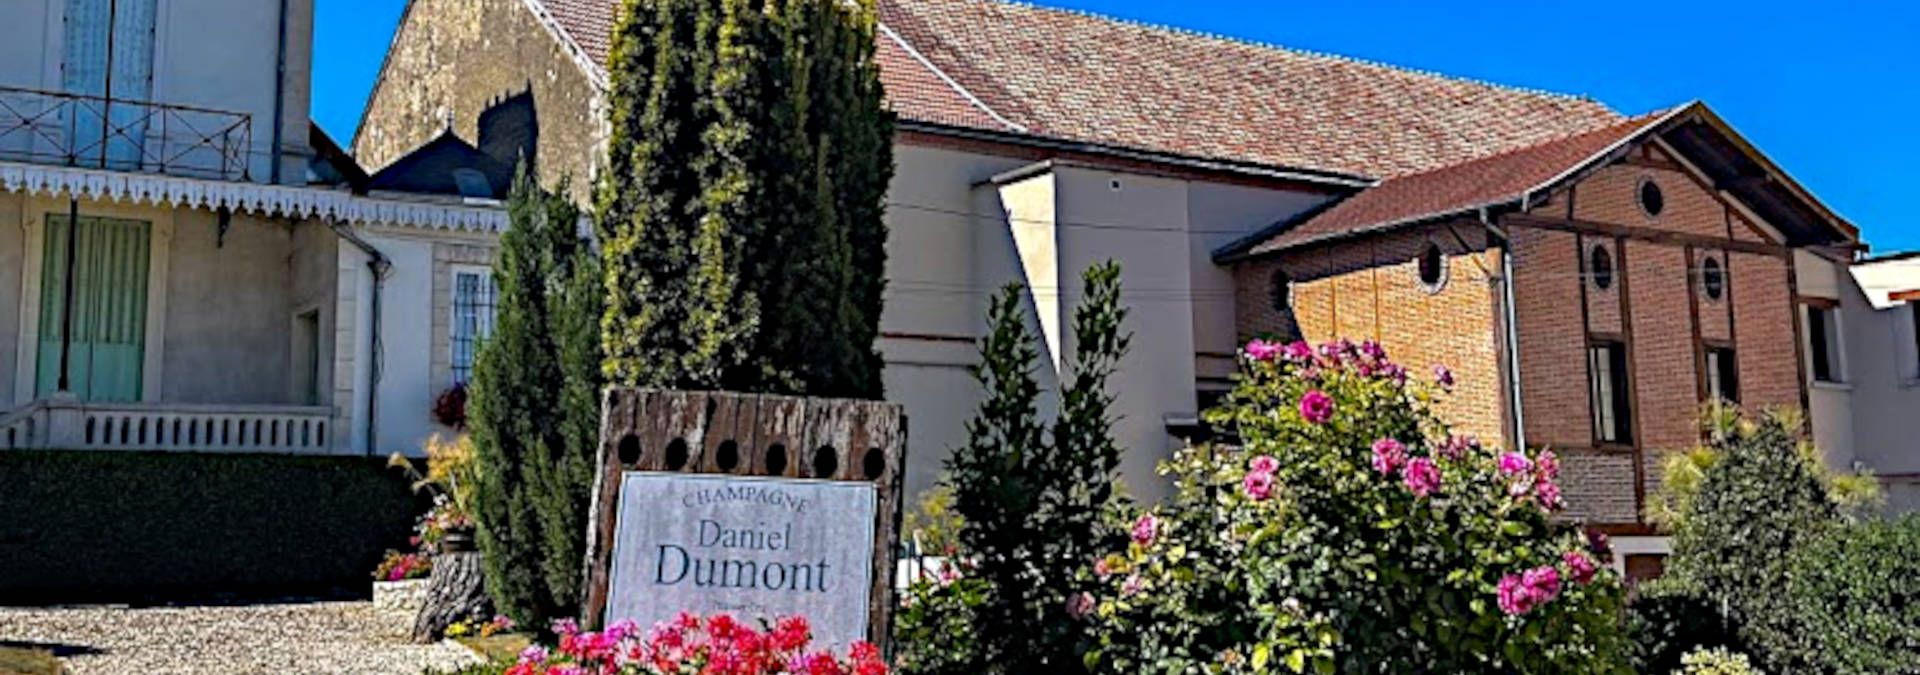 Champagne Daniel Dumont - Rue des Vignerons